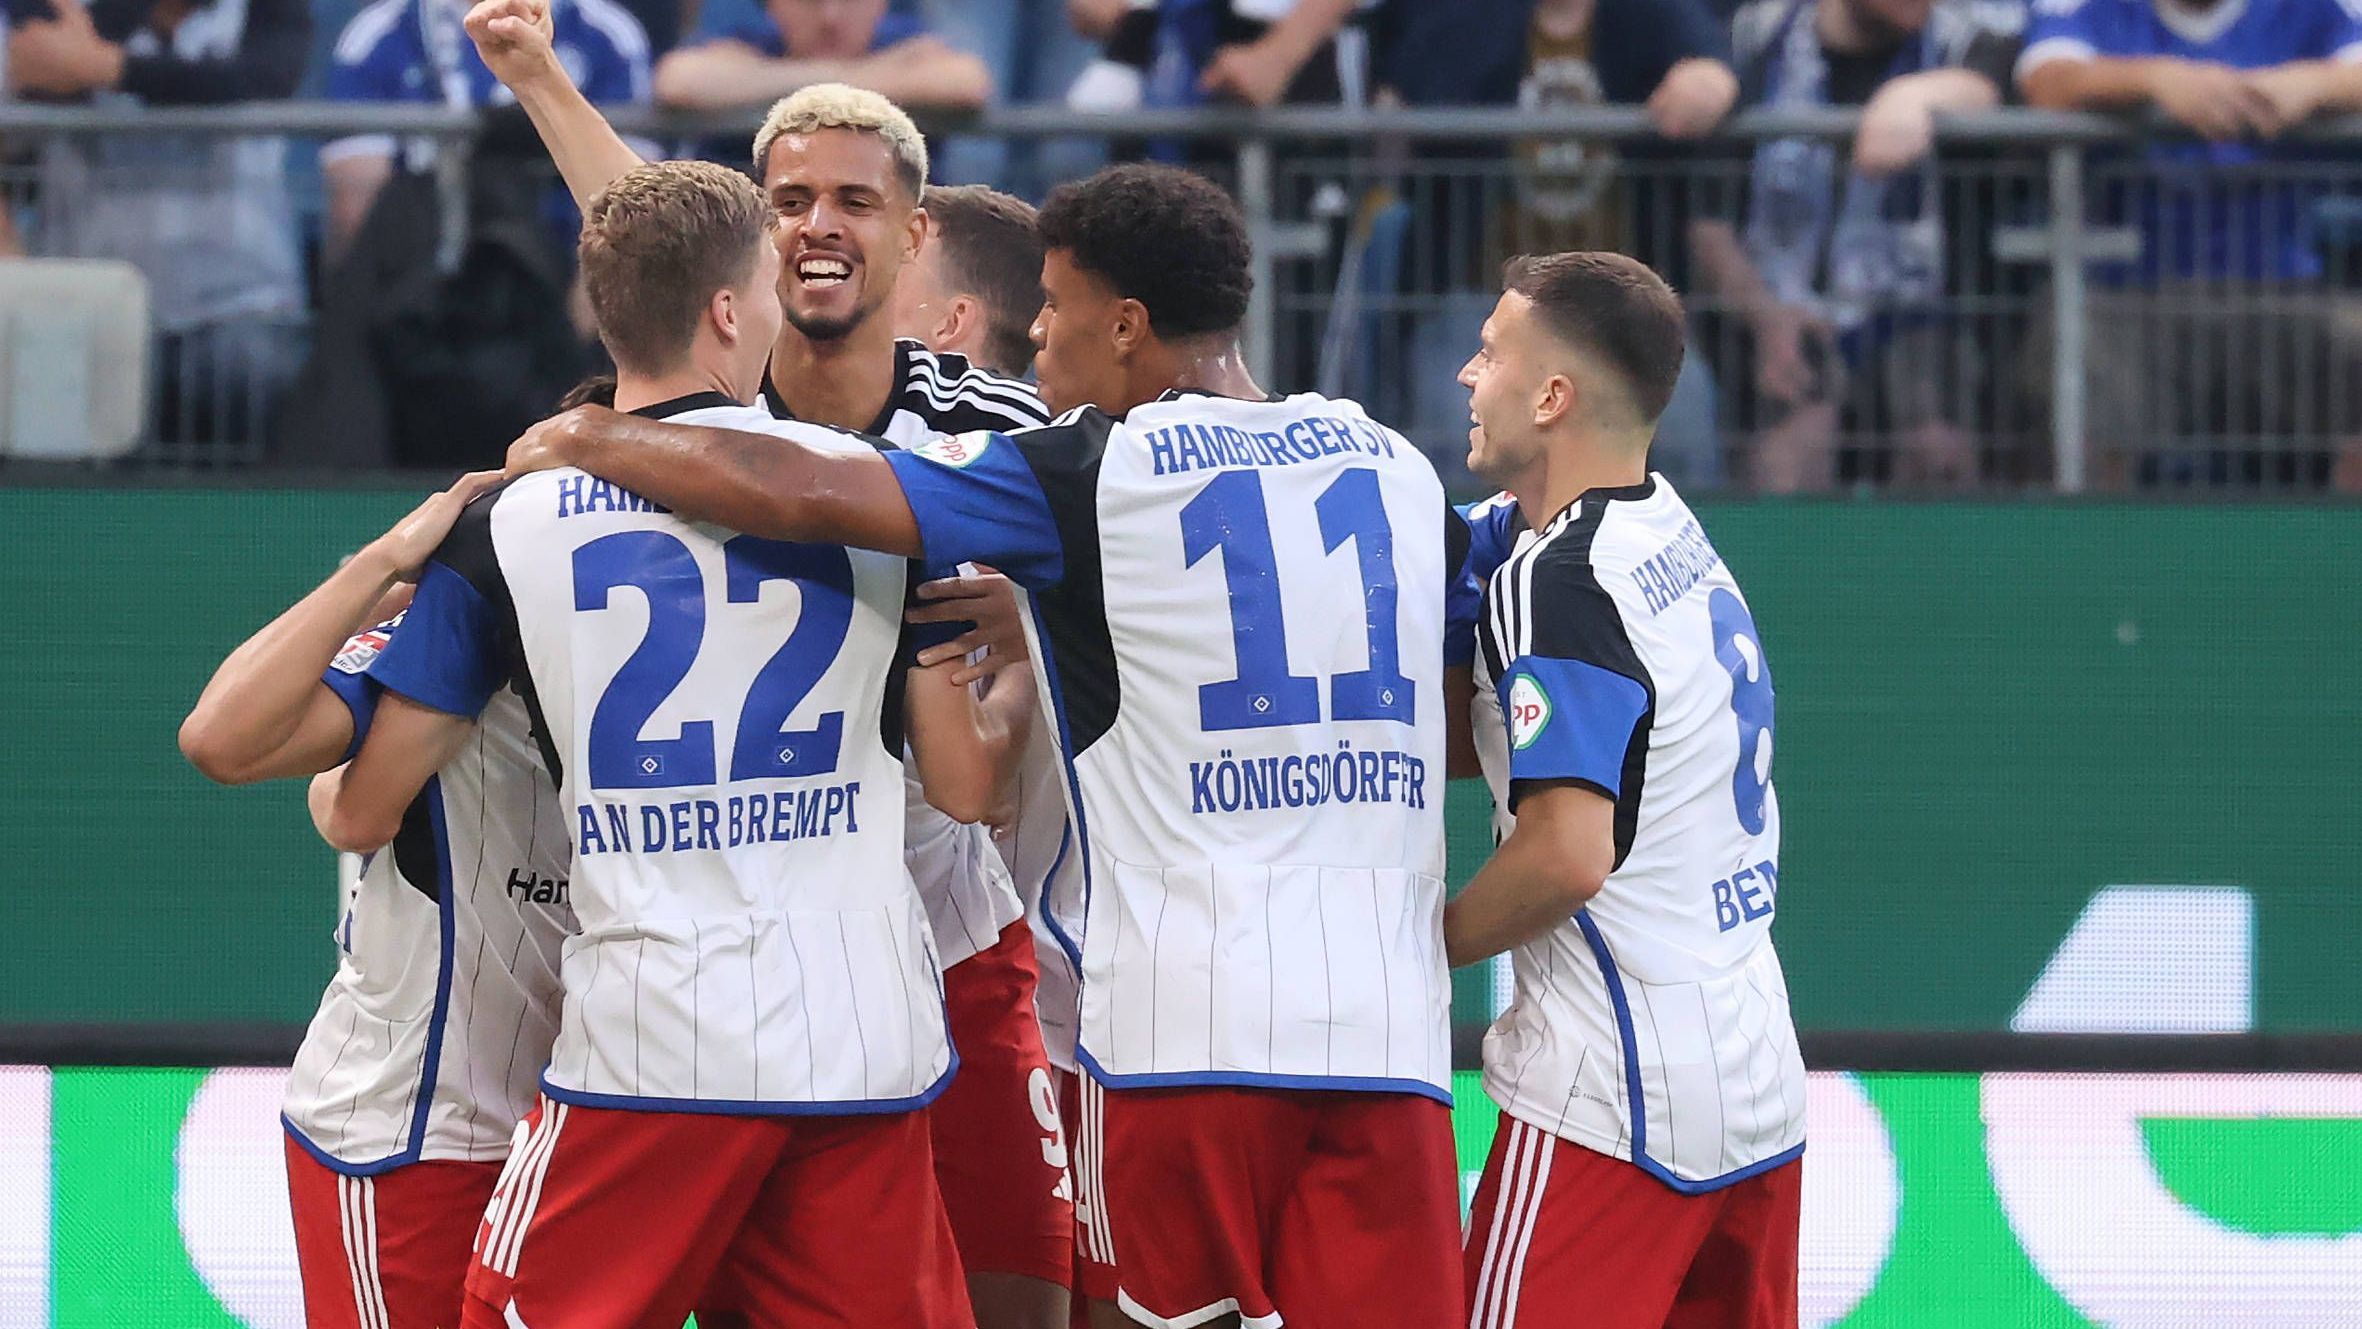 <strong>Hamburger SV gegen Schalke 04: Die Noten vom Hammer-Auftakt</strong><br>Was für ein irrer Zweitliga-Auftakt! Der Hamburger SV ringt den FC Schalke 04 in einem unterhaltsamen und verrückten Eröffnungsspiel mit 5:3 nieder. Wir haben beide Mannschaften benotet.